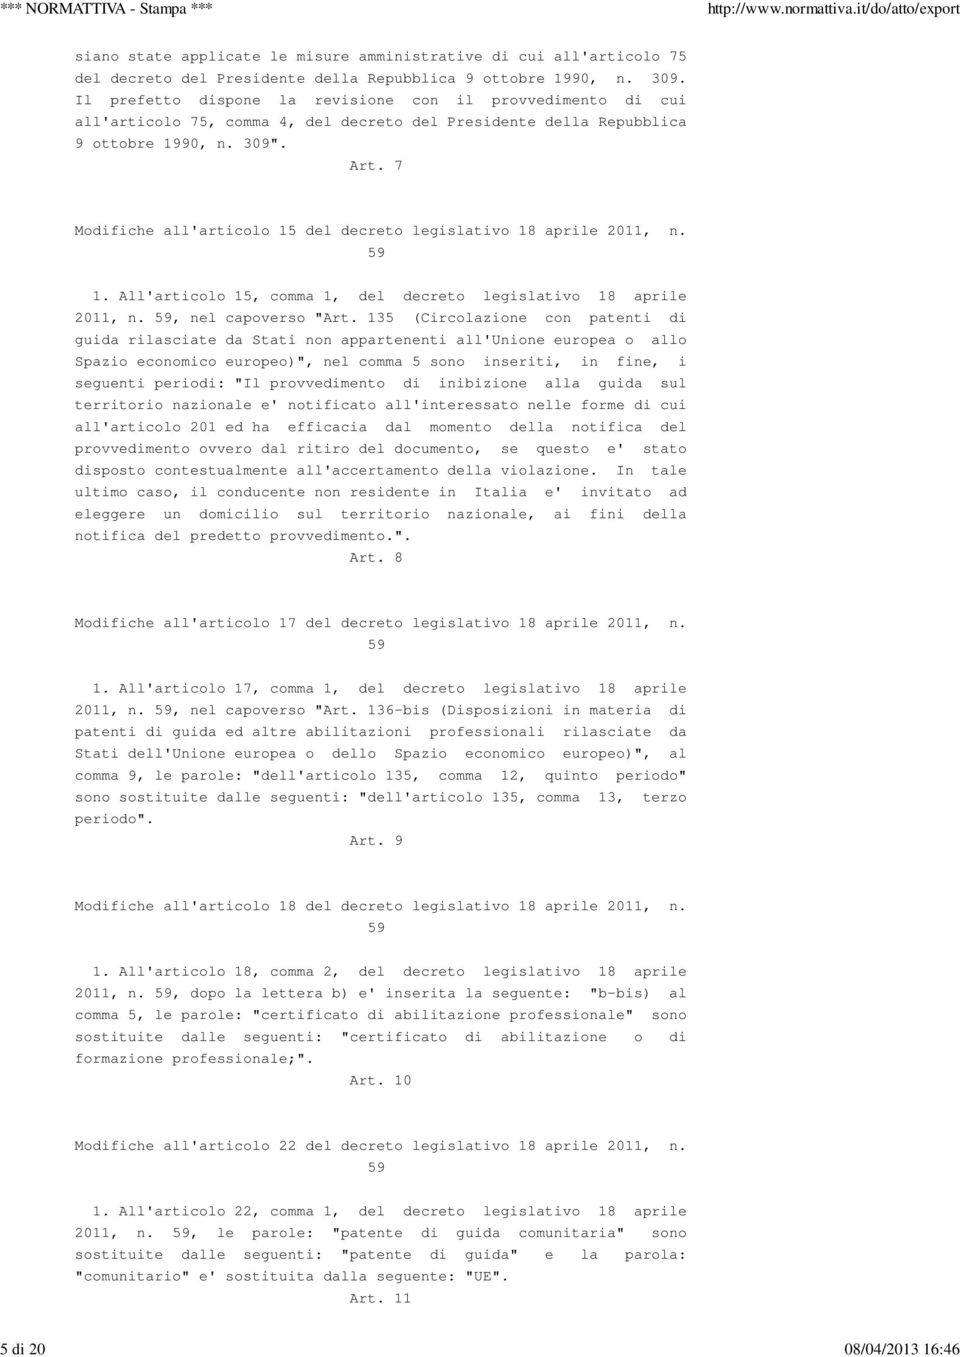 7 Modifiche all'articolo 15 del decreto legislativo 18 aprile 2011, n. 59 1. All'articolo 15, comma 1, del decreto legislativo 18 aprile 2011, n. 59, nel capoverso "Art.